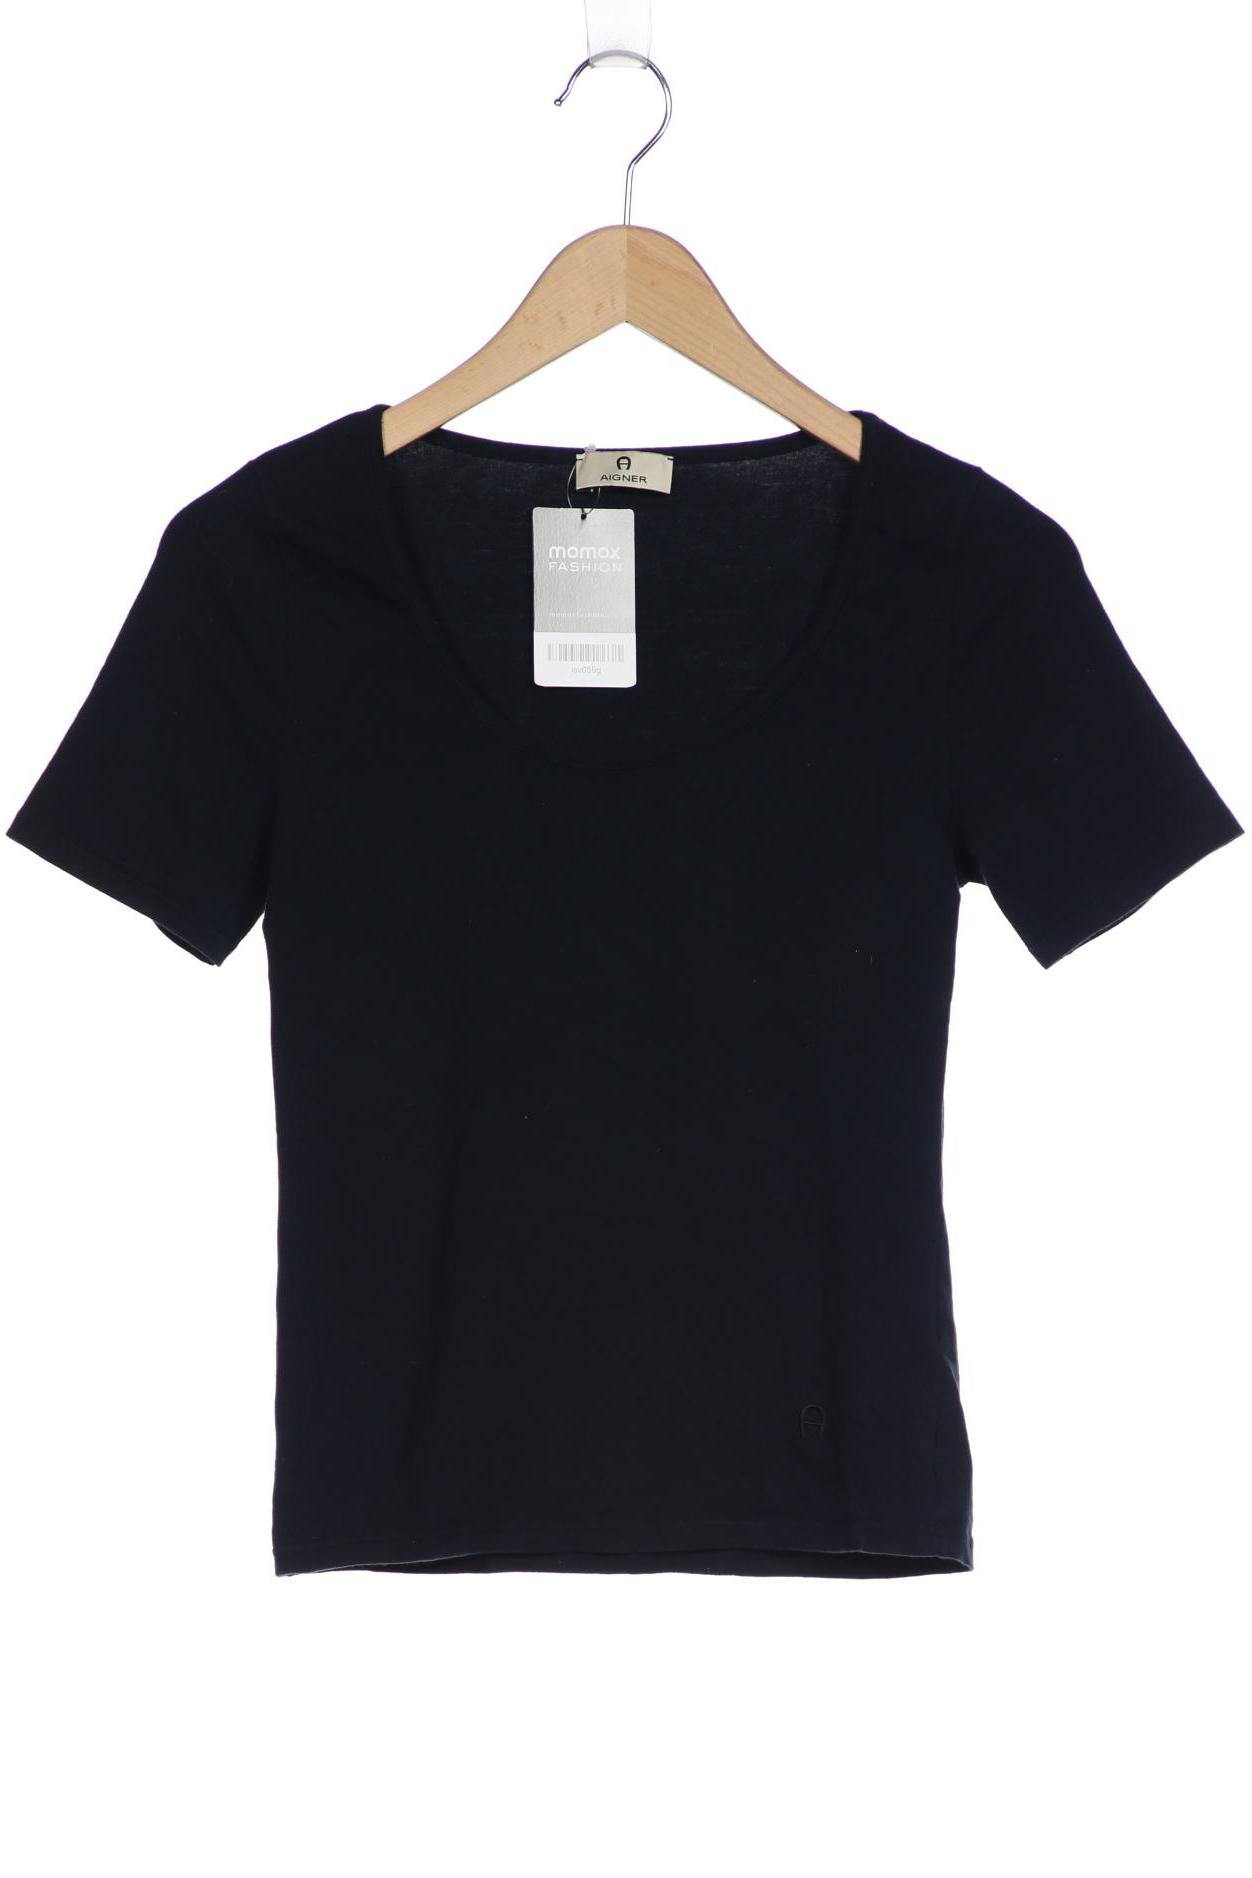 Aigner Damen T-Shirt, marineblau, Gr. 36 von aigner